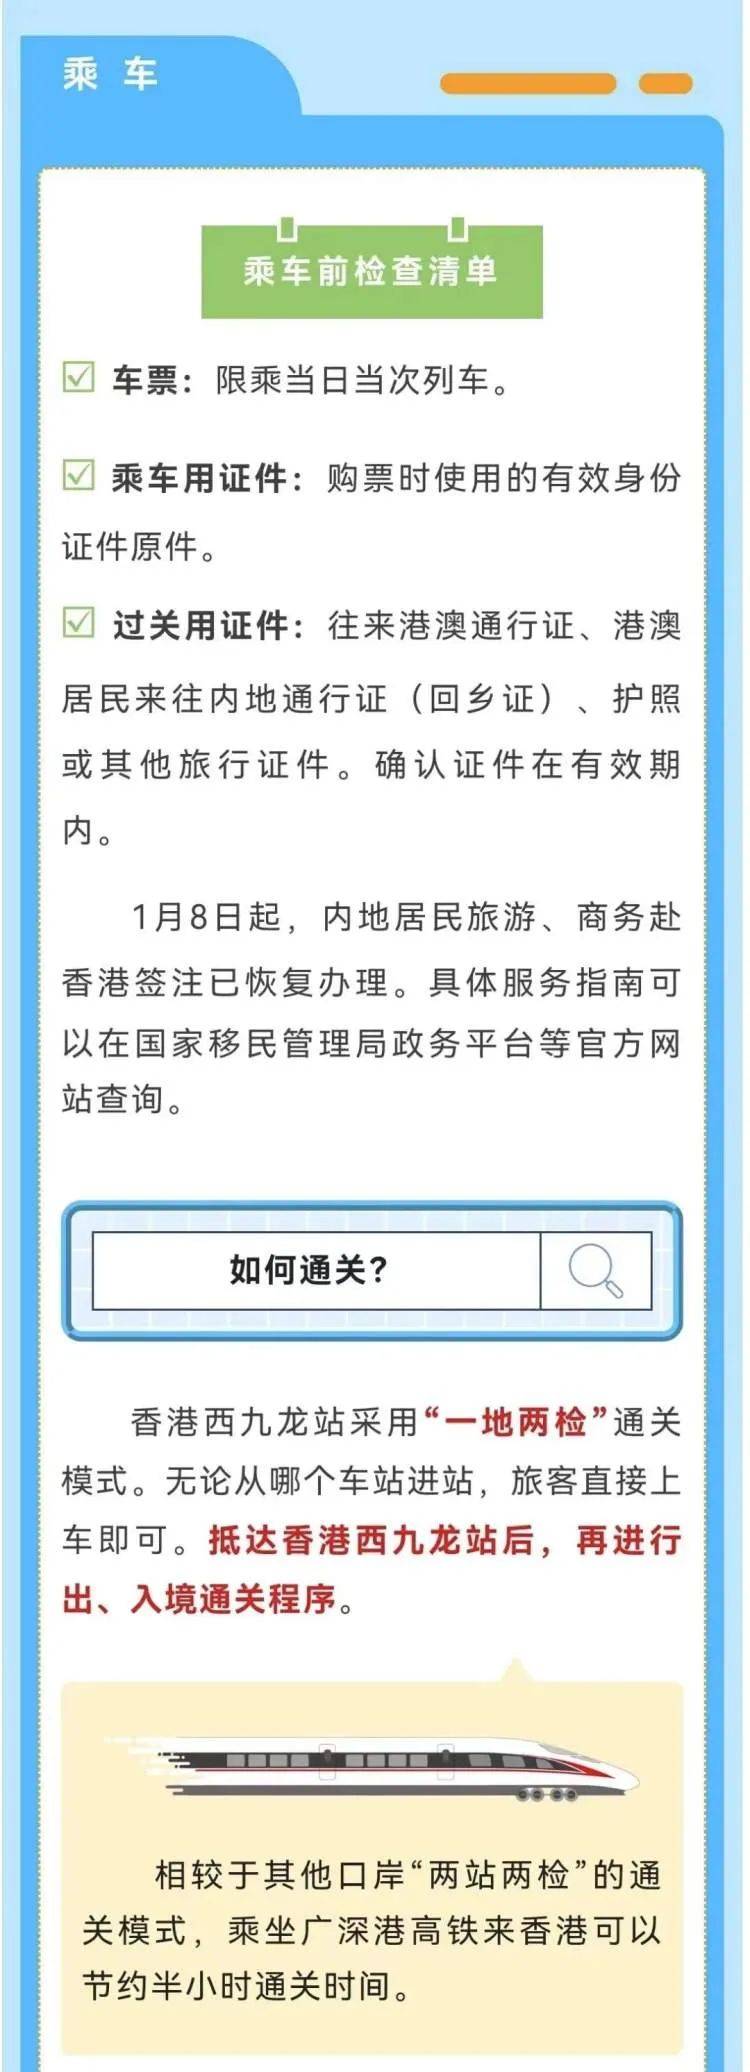 上海到香港机票_上海到香港的机票多少钱_上海至香港特价机票